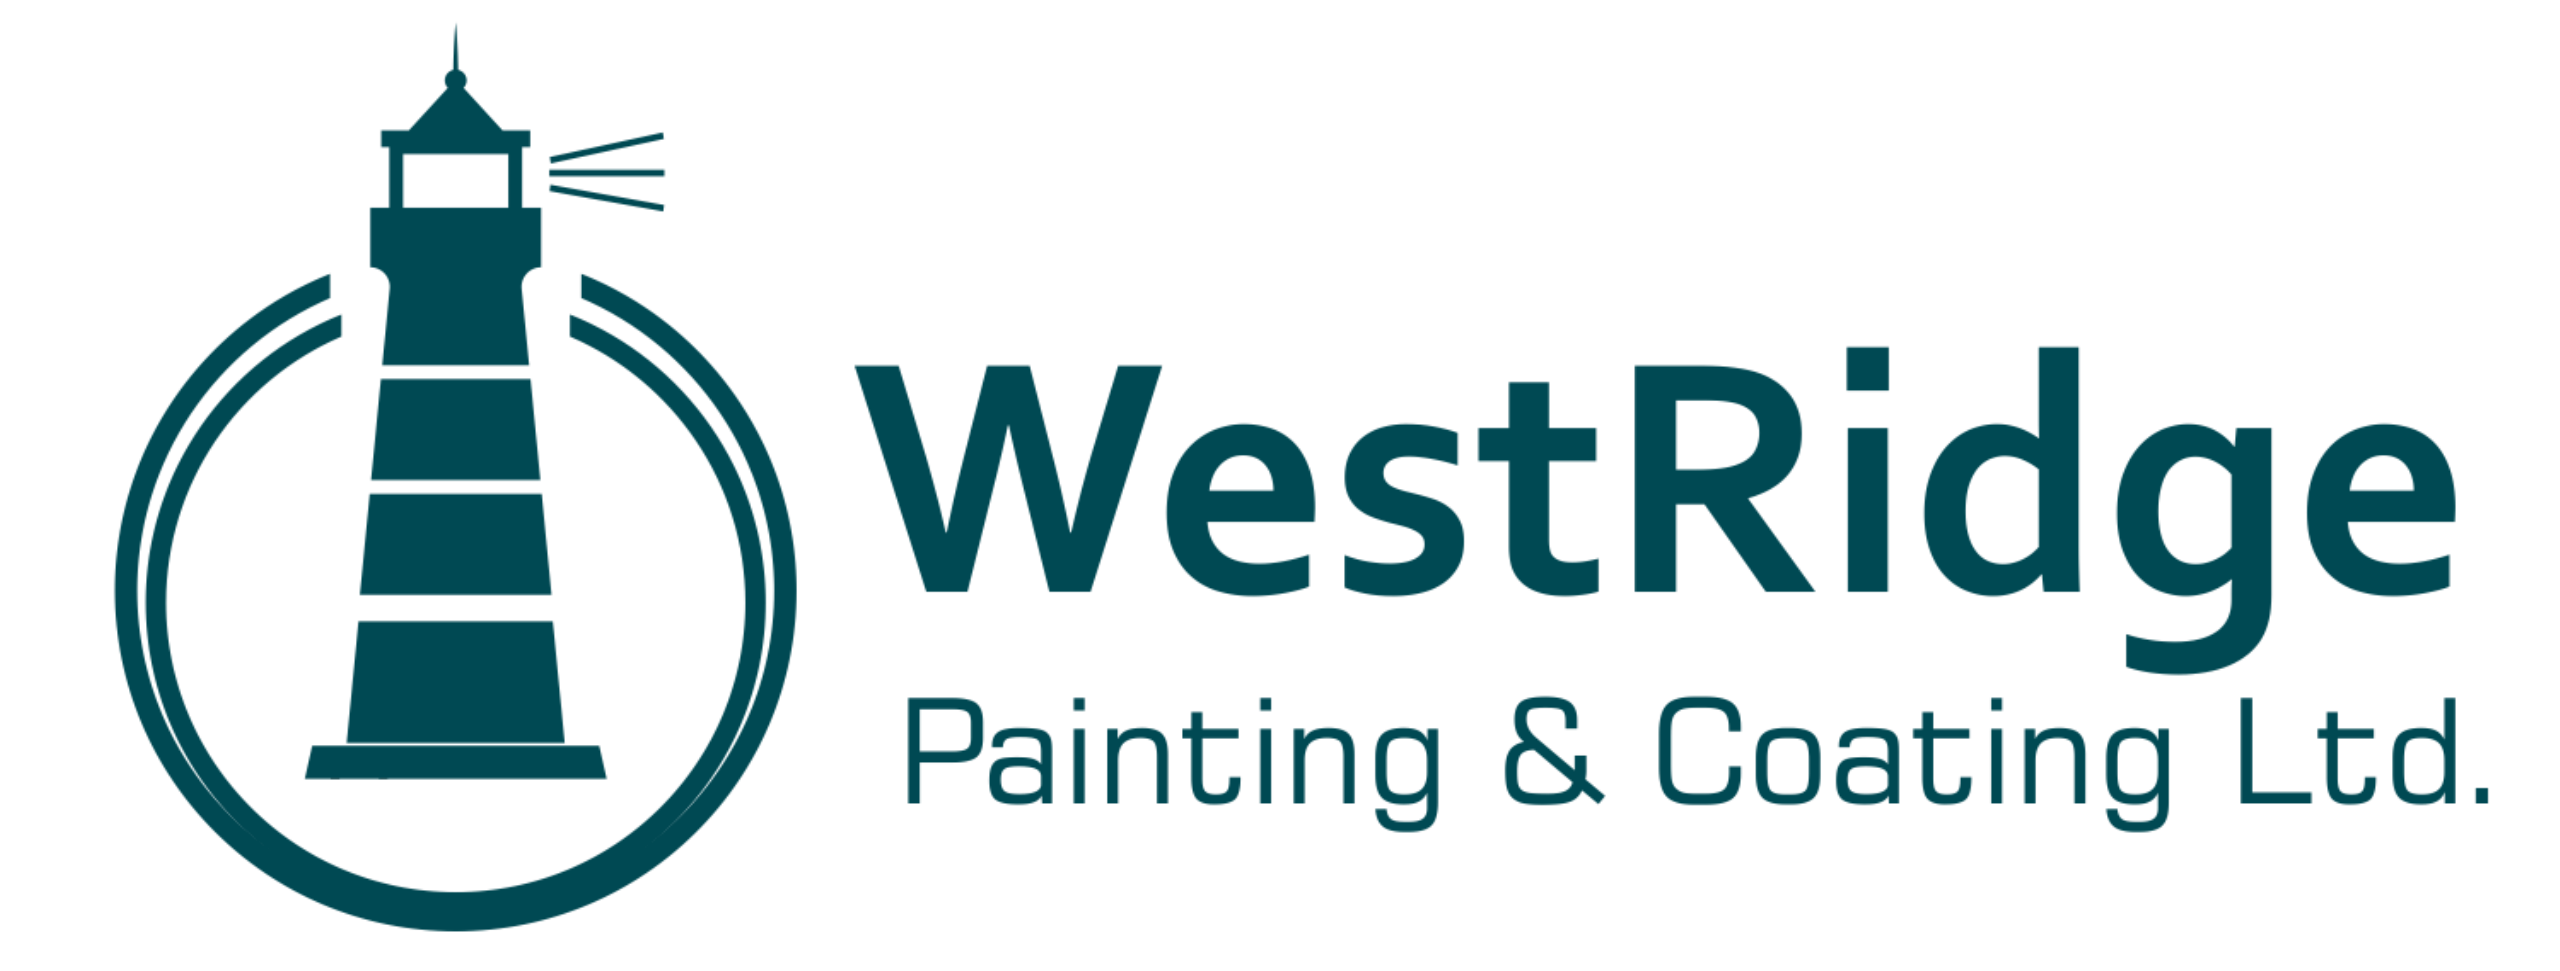 Westridge Painting & Coating Ltd. Logo